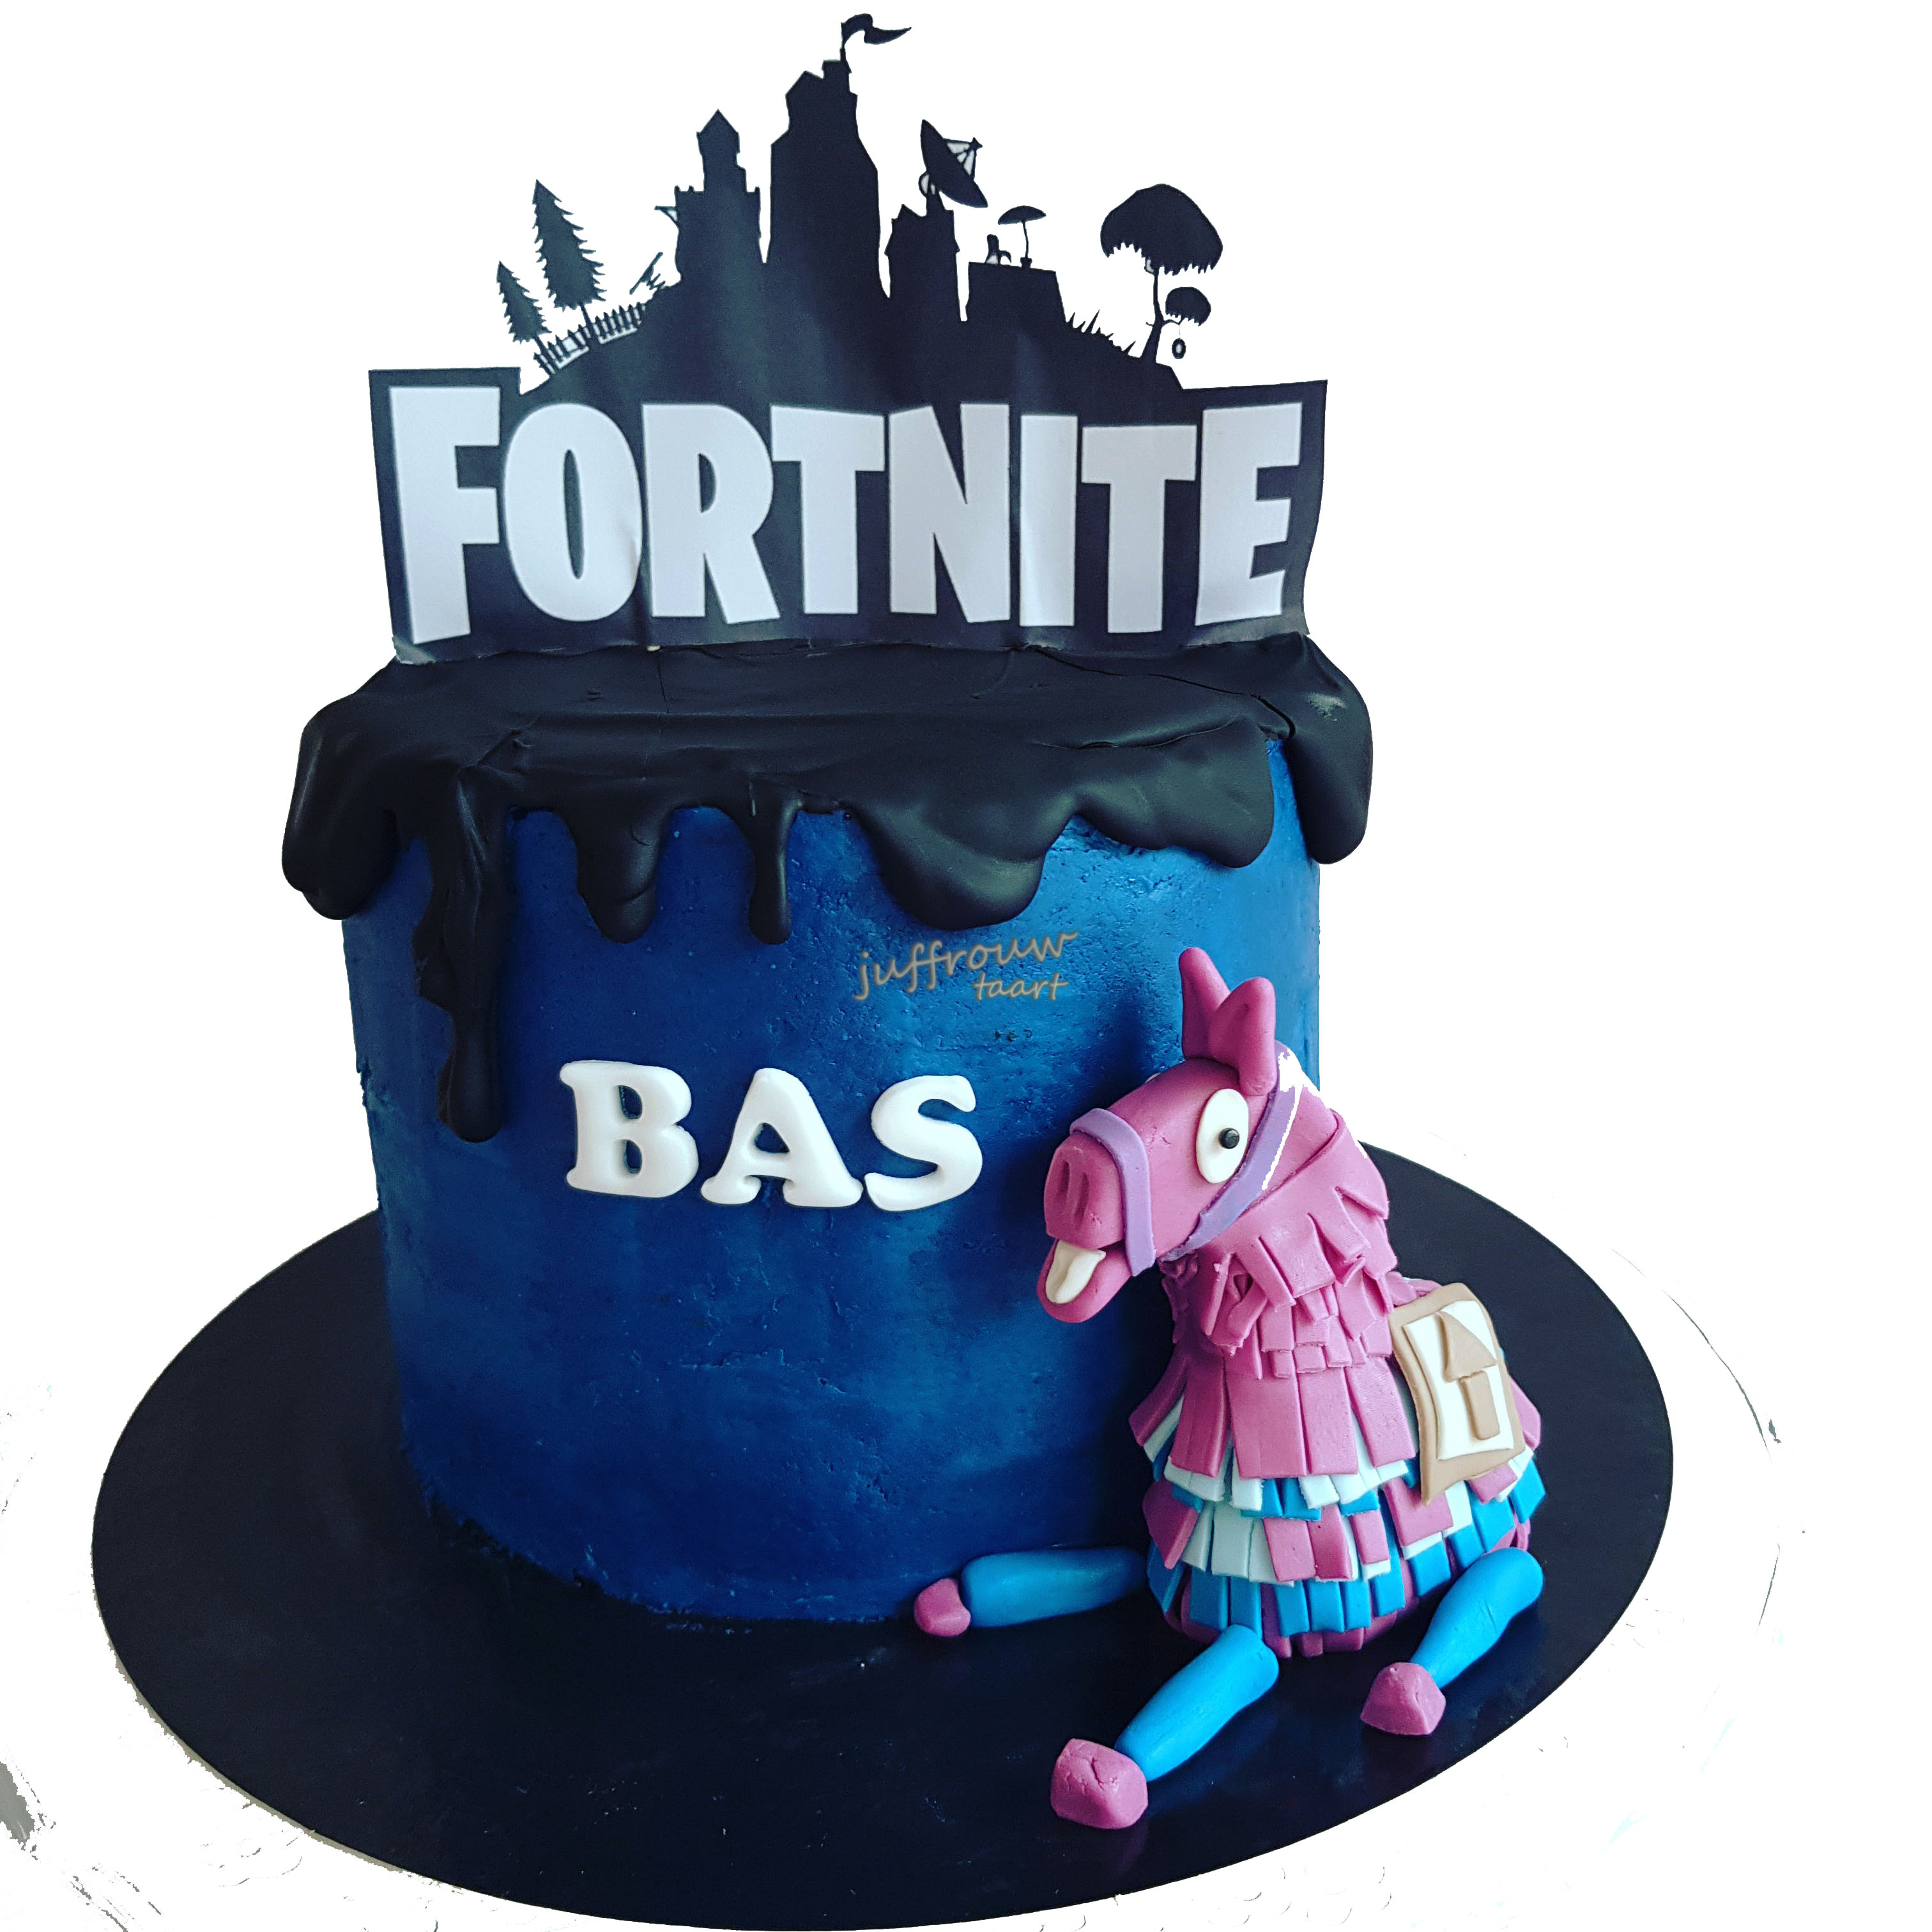 Fortnite taart voor Bas